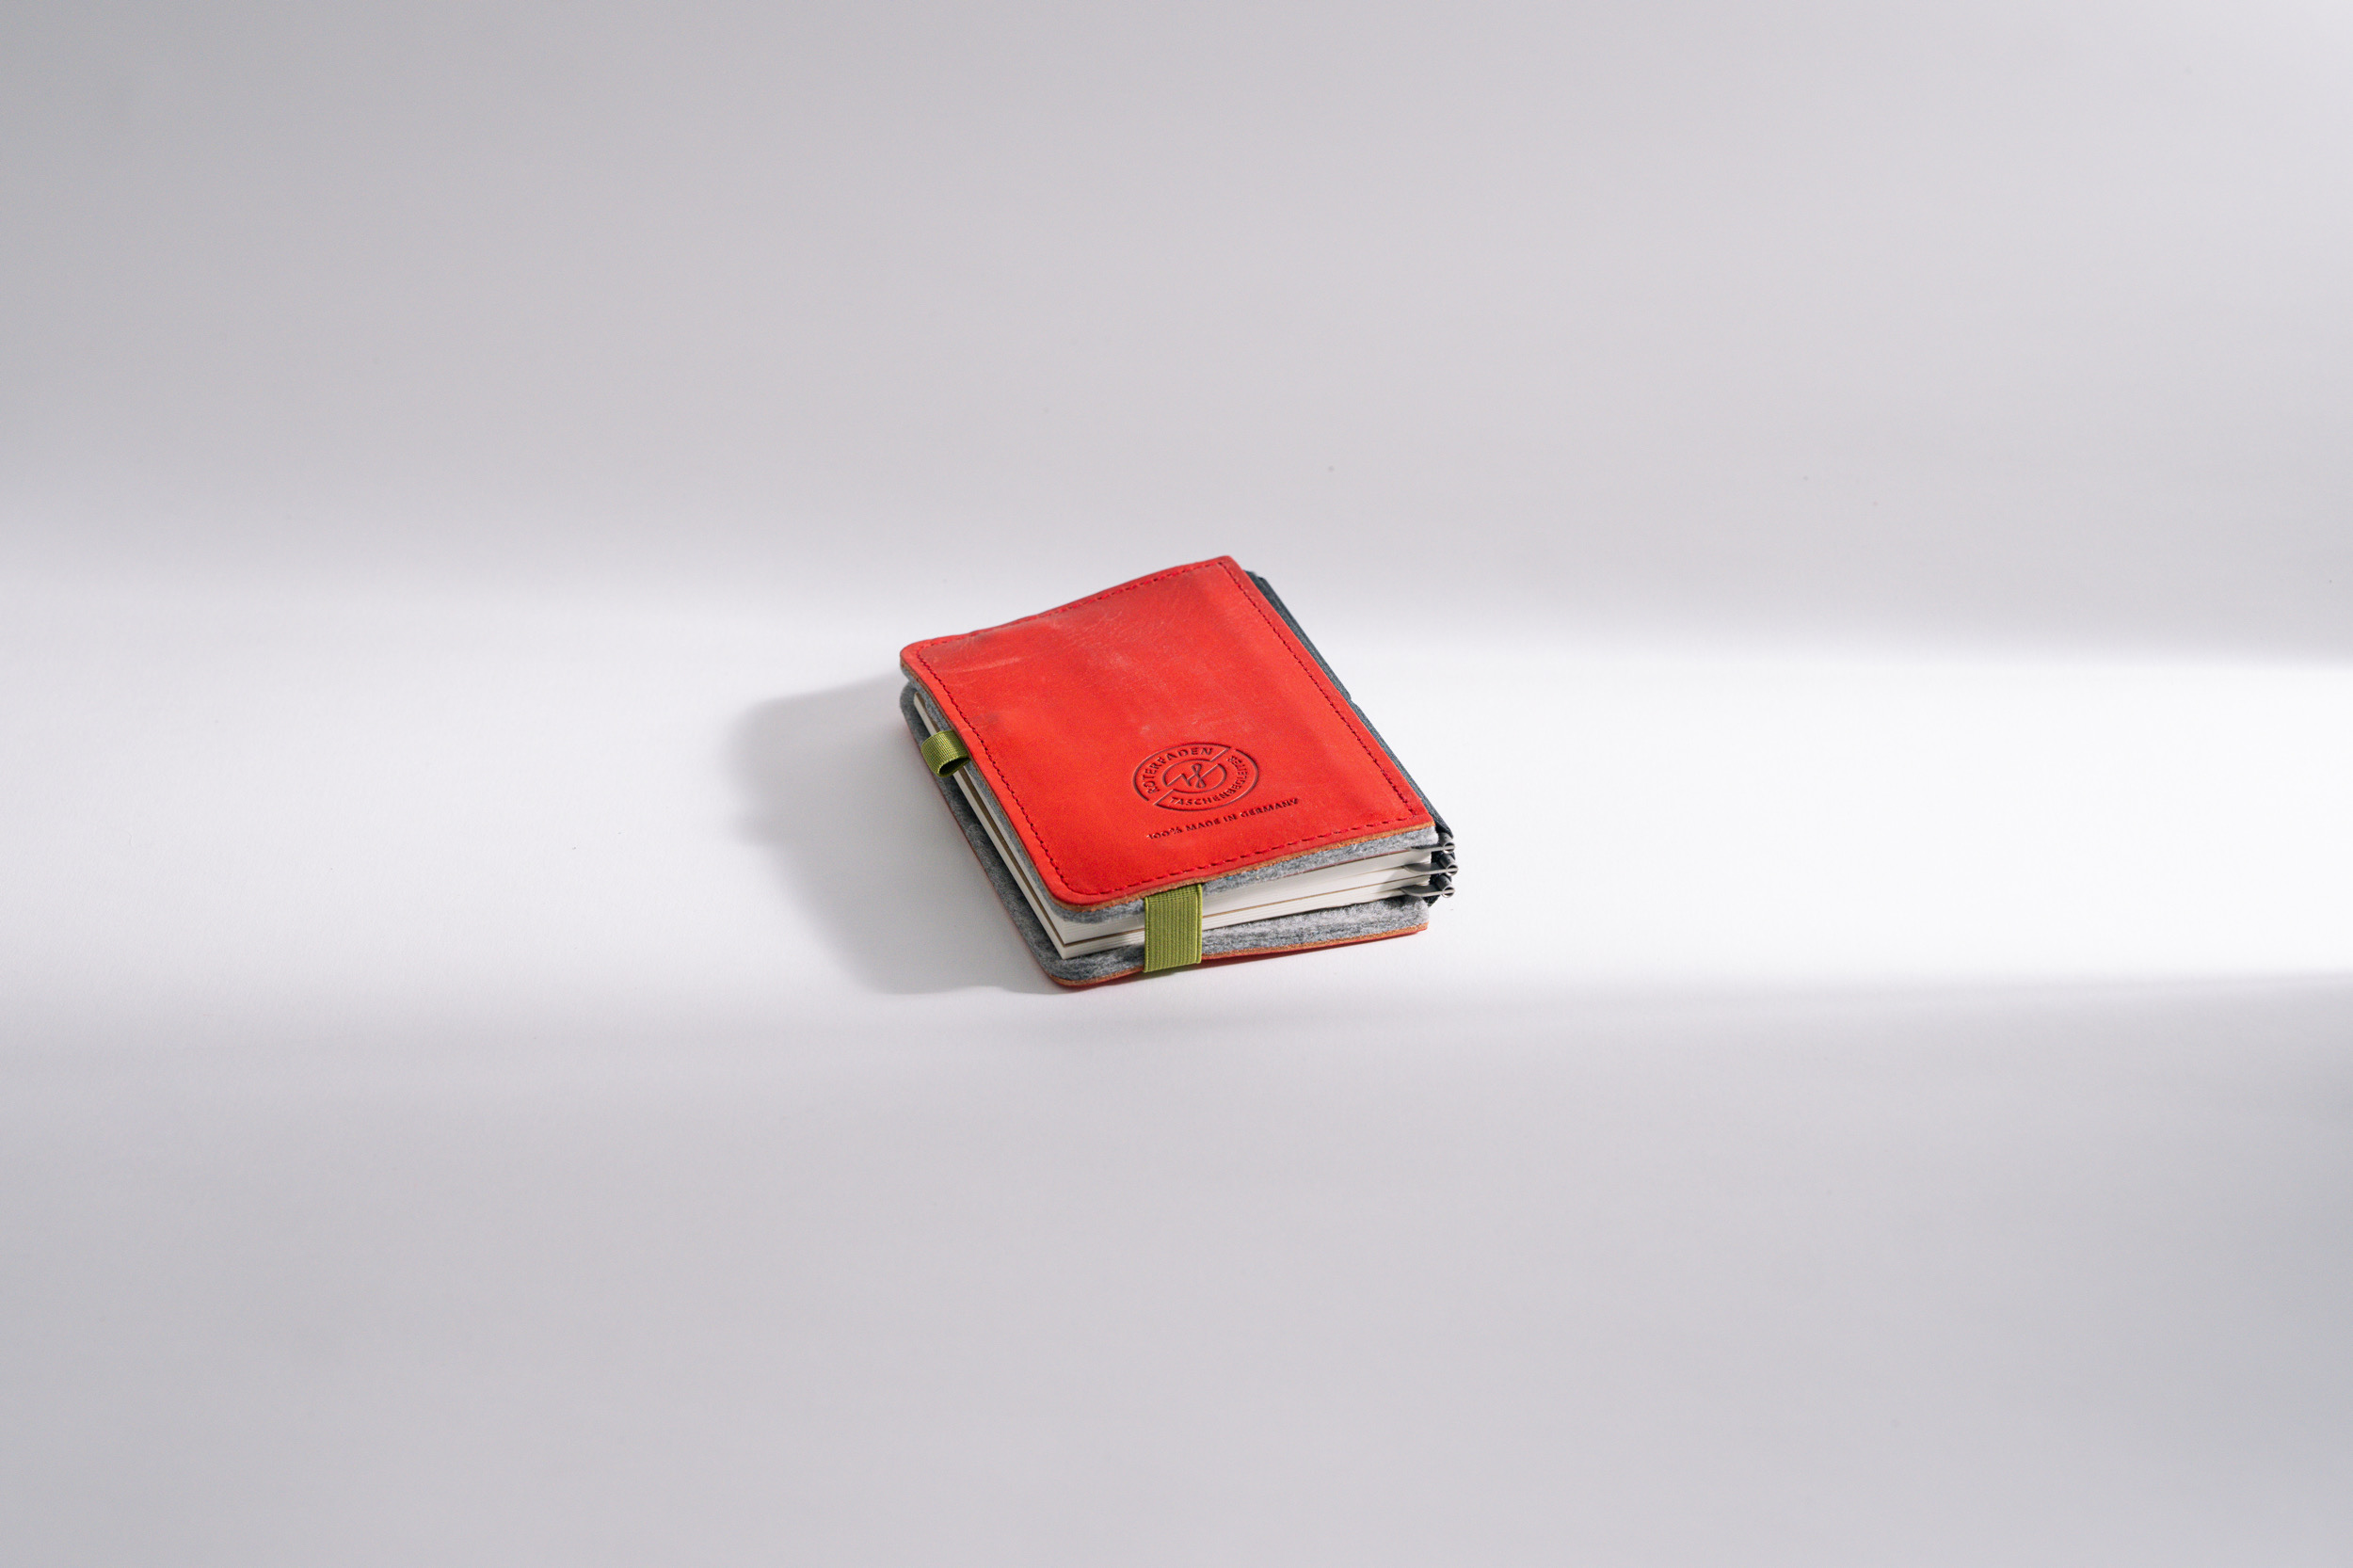 Roterfaden LTD_025 – Klassischer Bestseller mit chromfreiem Leder und Merino Filz für zeitlose Eleganz.